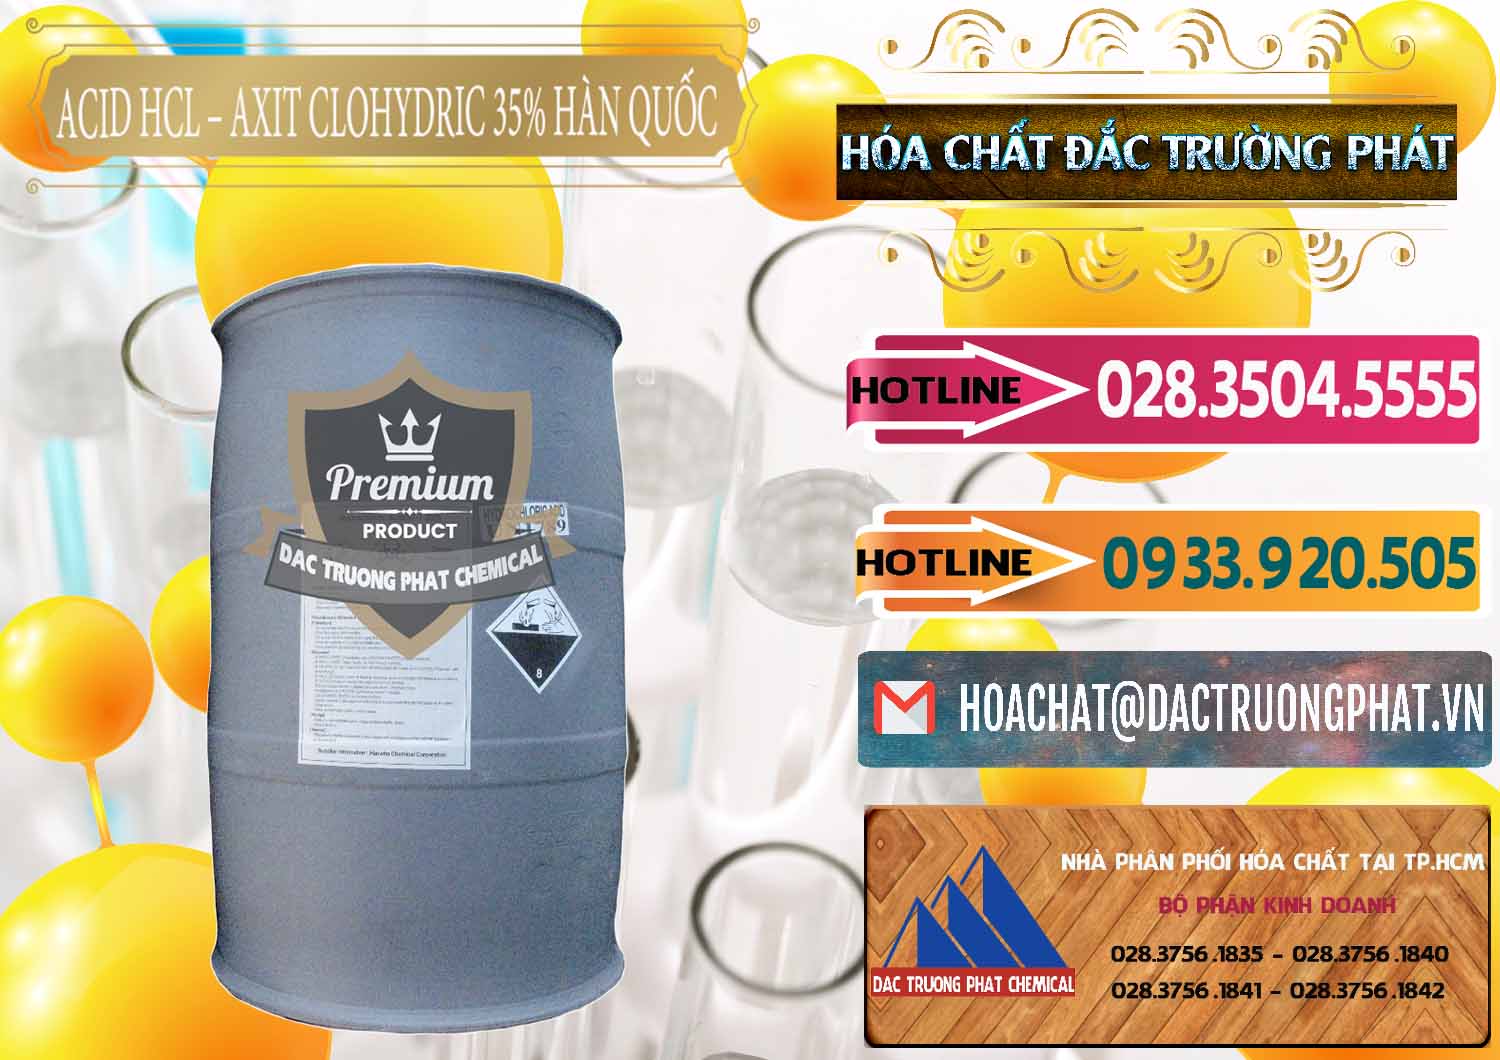 Công ty chuyên phân phối - bán Acid HCL - Axit Cohidric 35% Hàn Quốc Korea - 0011 - Nhà cung cấp & phân phối hóa chất tại TP.HCM - dactruongphat.vn